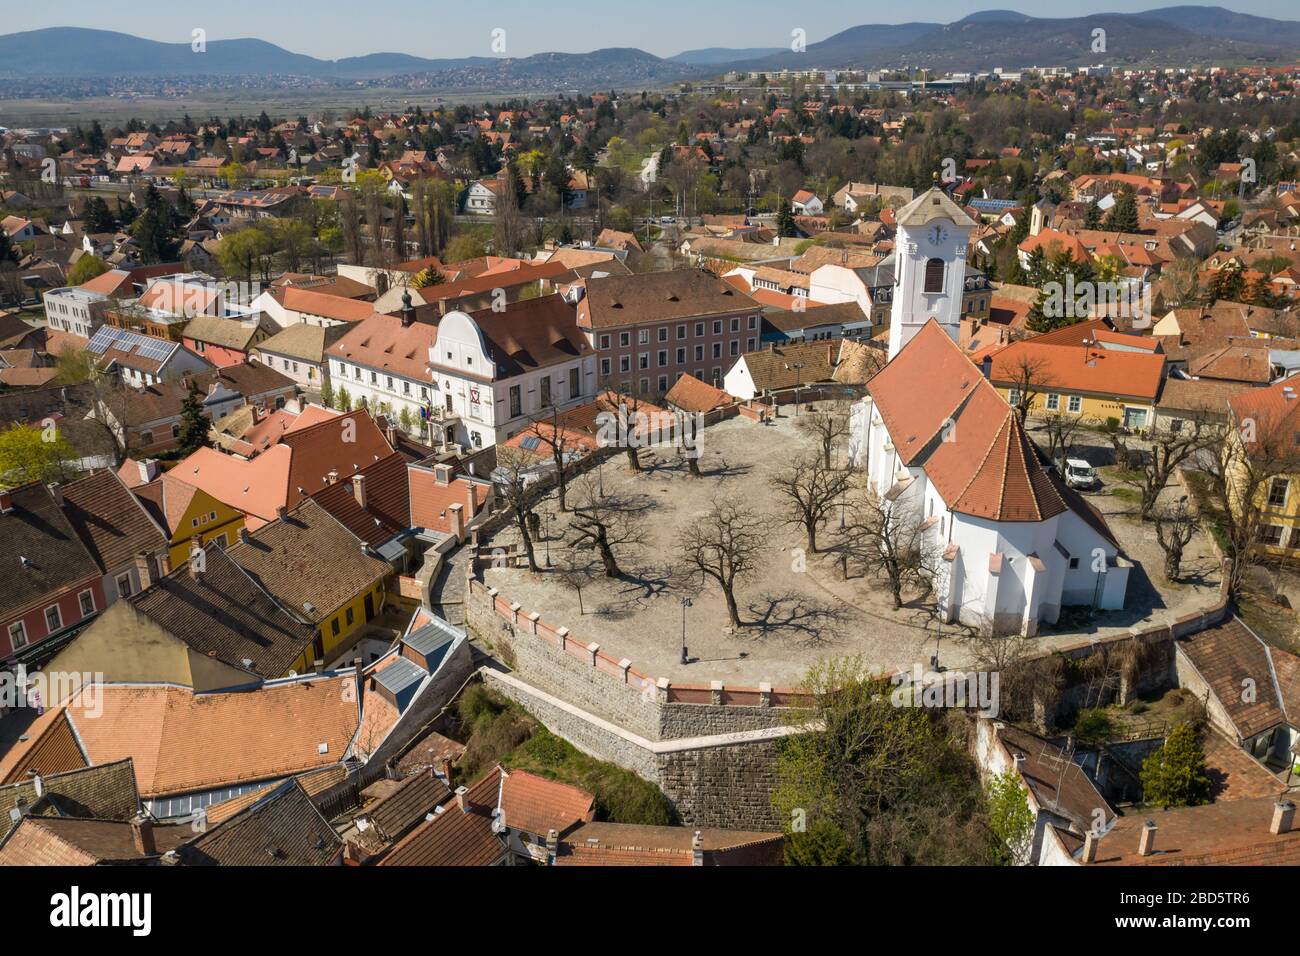 Destination touristique vide à Szentendre, Hongrie. Normalement plein de touristes et de bazars. Industrie du voyage, le tourisme a cessé en Europe (coronavirus) Banque D'Images